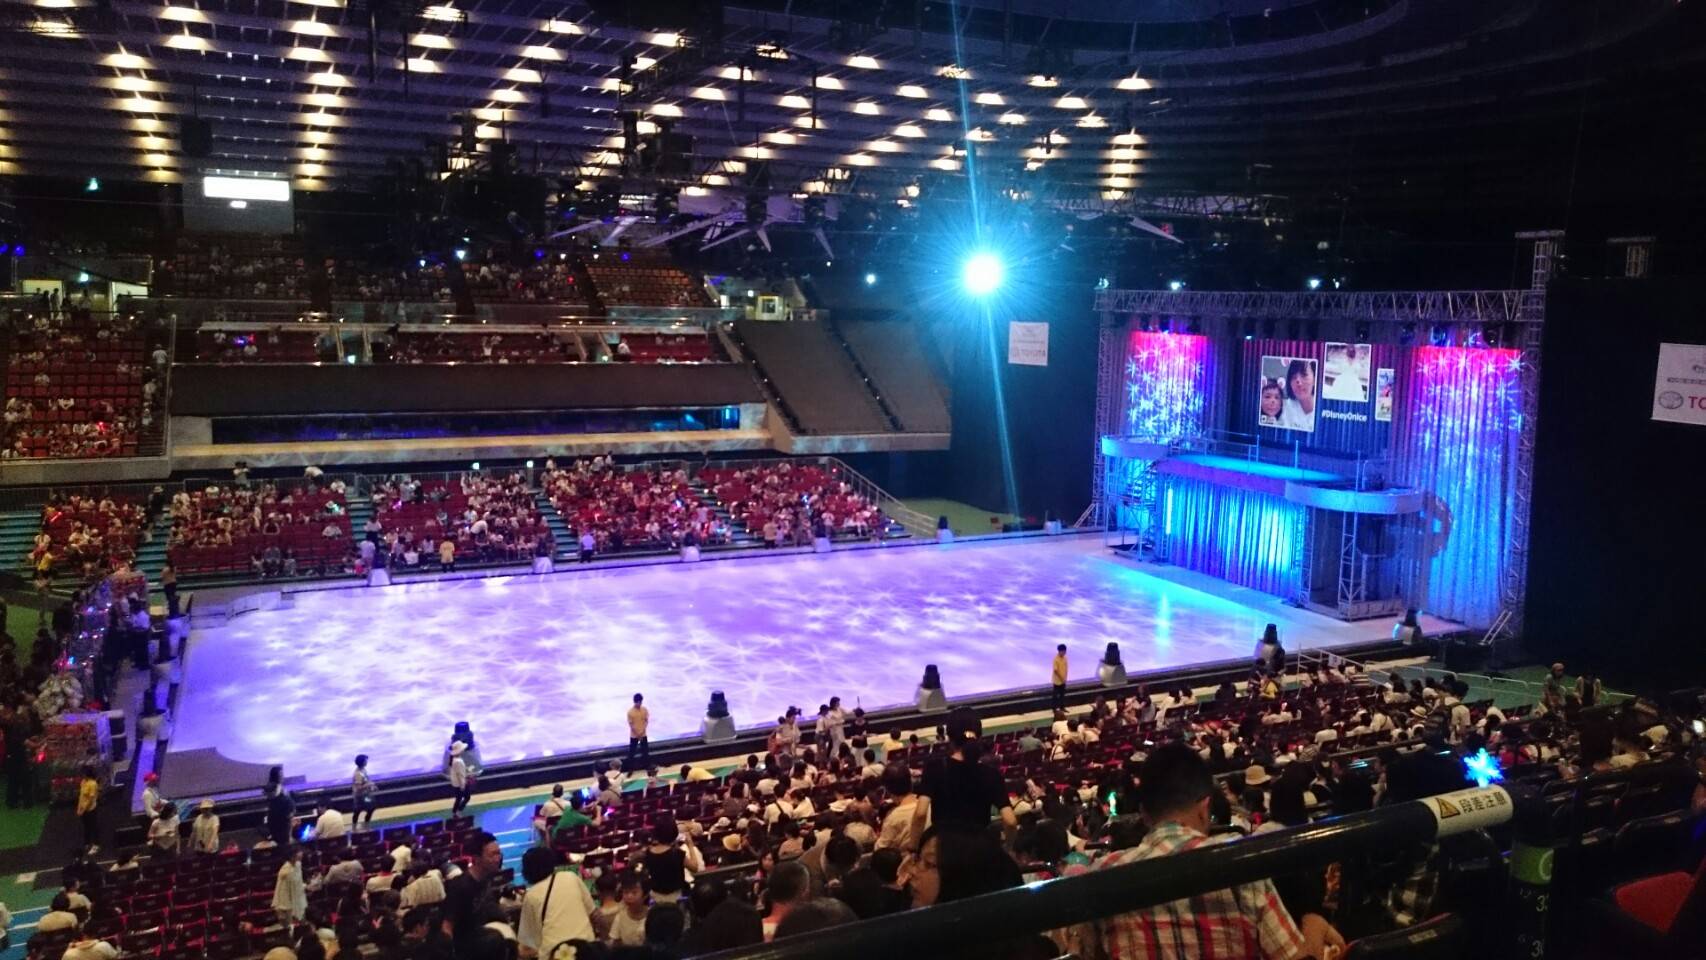 ディズニーオンアイス大阪公演|会場の雰囲気や各座席からの見え方・おすすめの席を紹介 | ぱぱのせなか